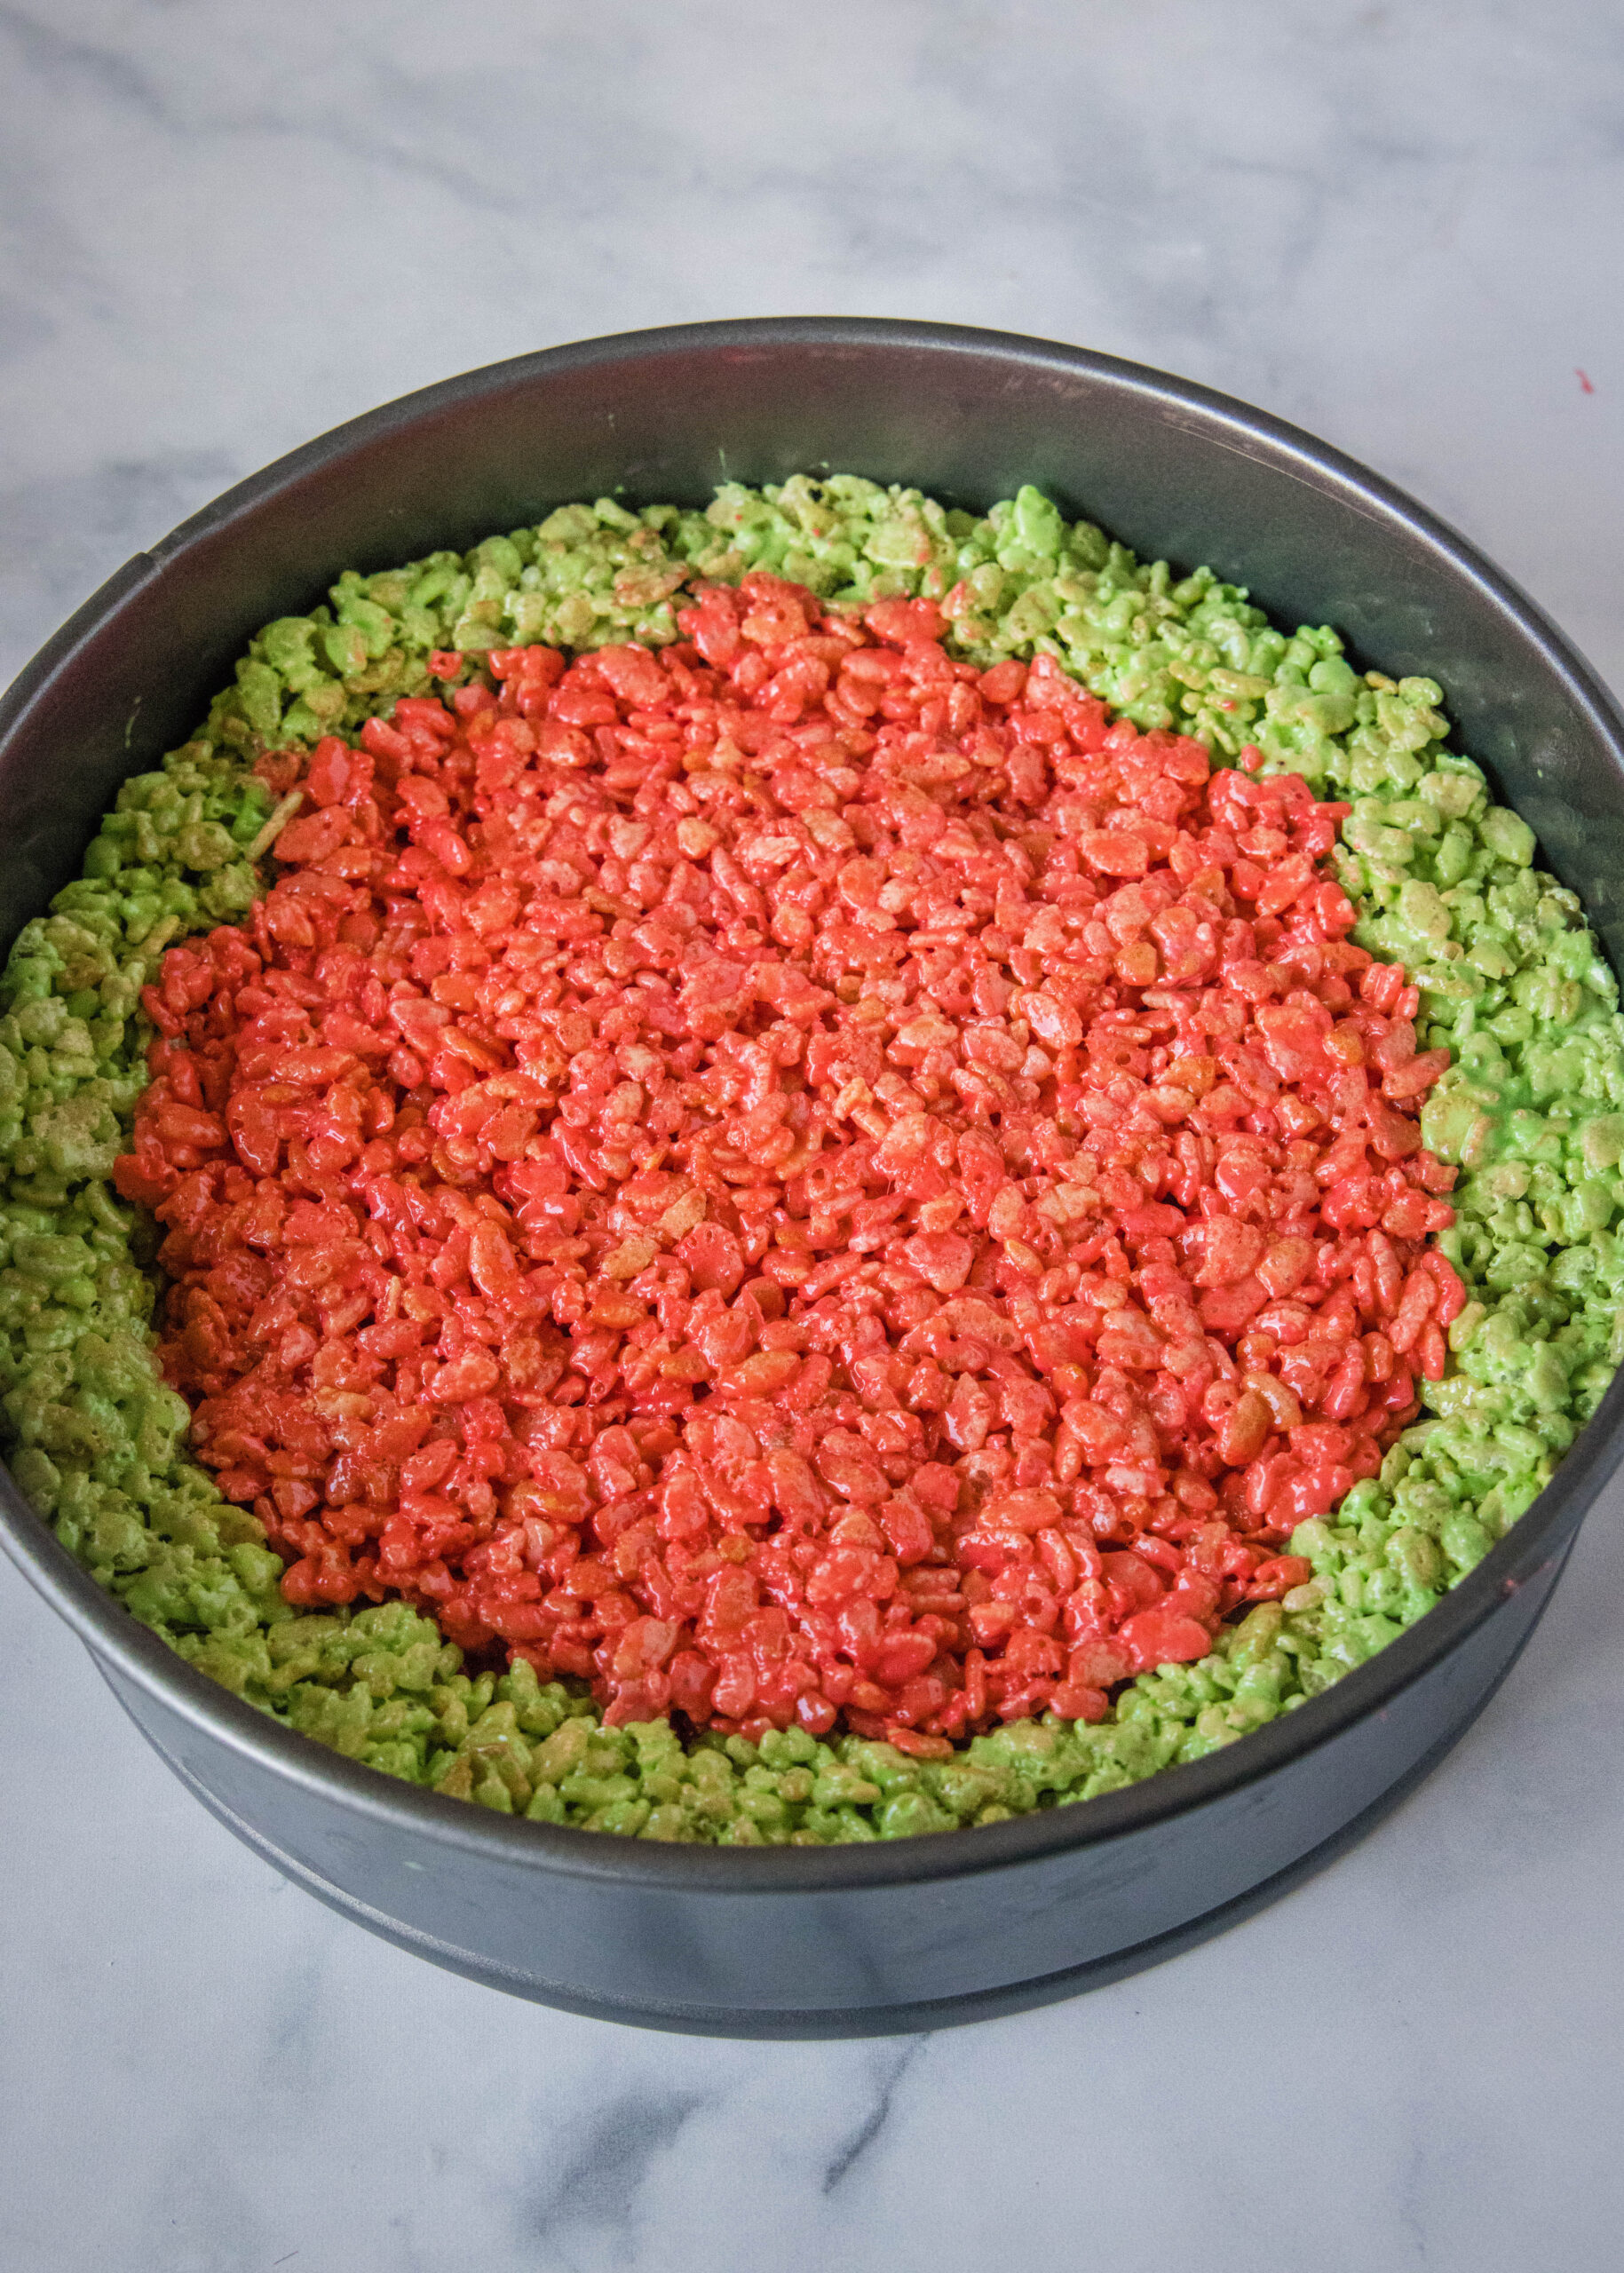 watermelon krispies treats in baking pan